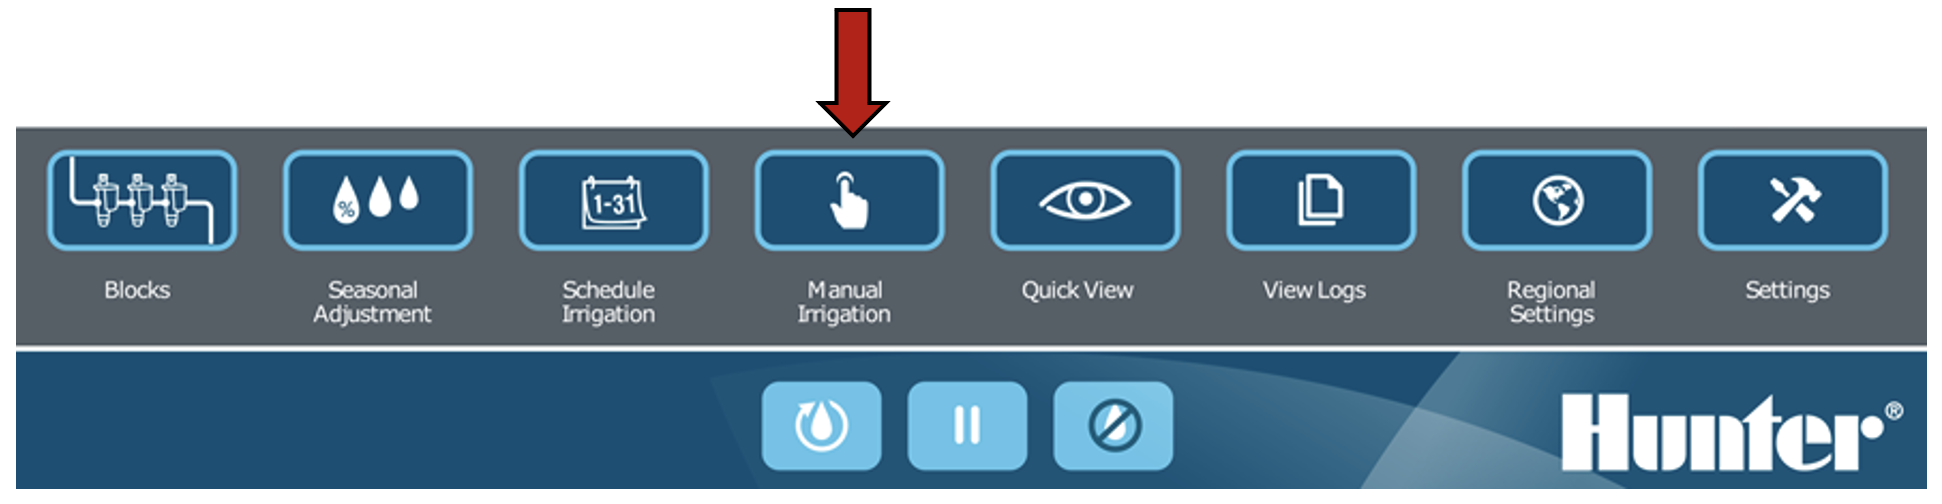 Immagine dell'interfaccia che evidenzia il pulsante Irrigazione manuale.